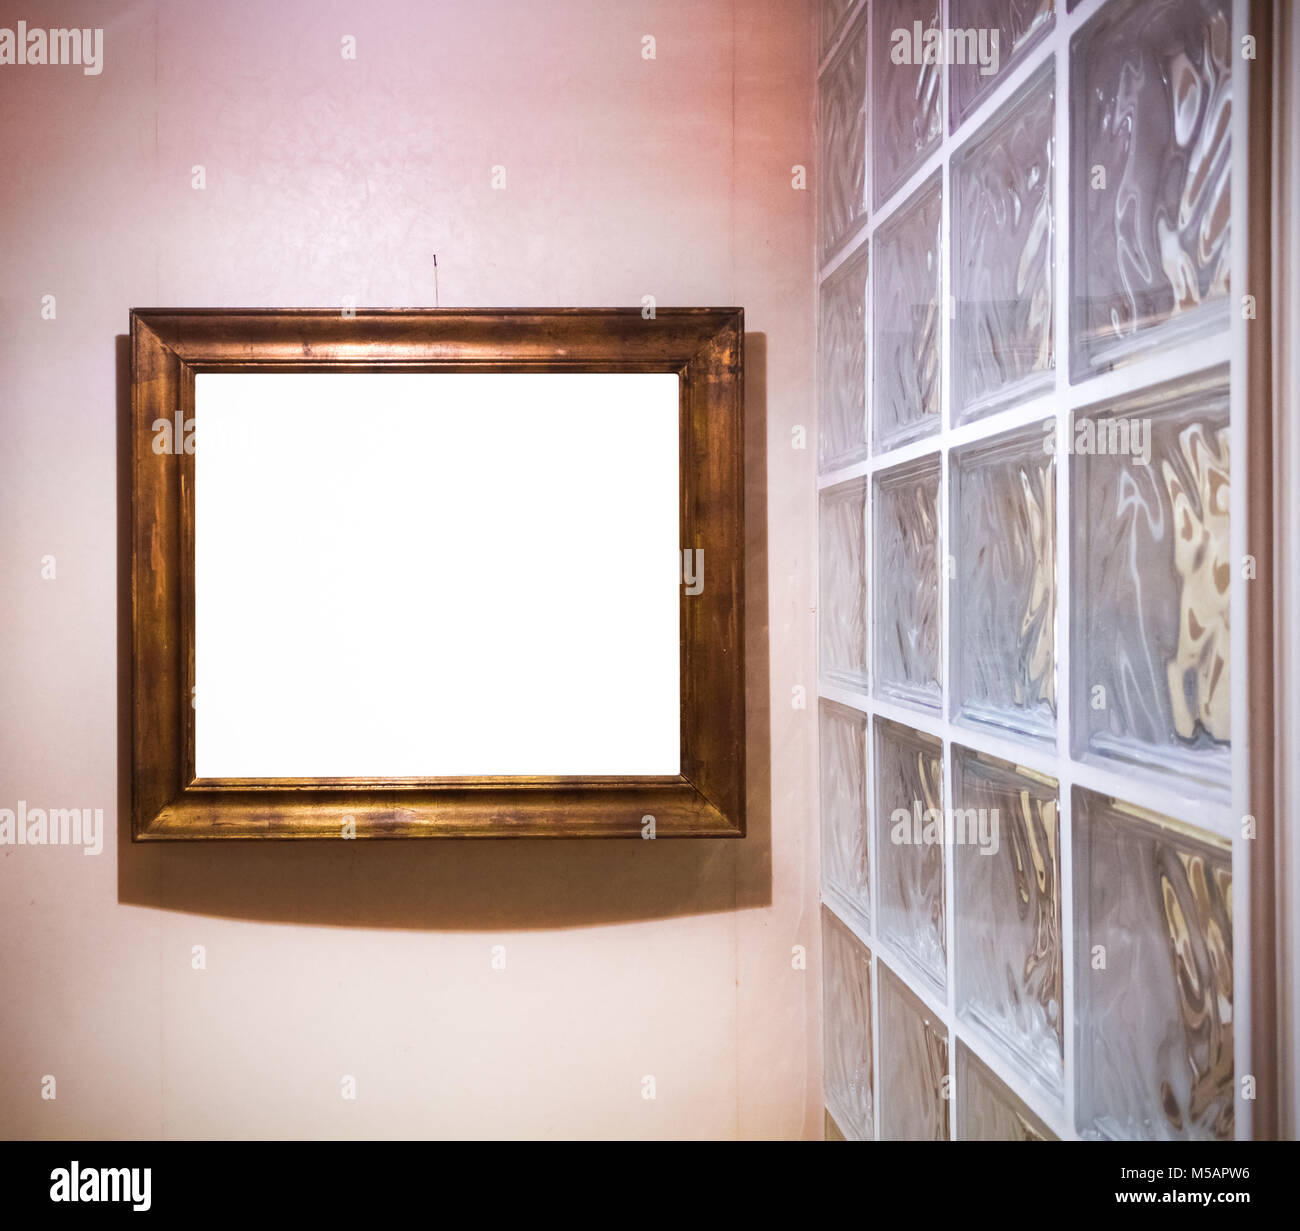 Un cadre doré antique vide par un mur de verre. L'éclairage rouge intéressant Banque D'Images